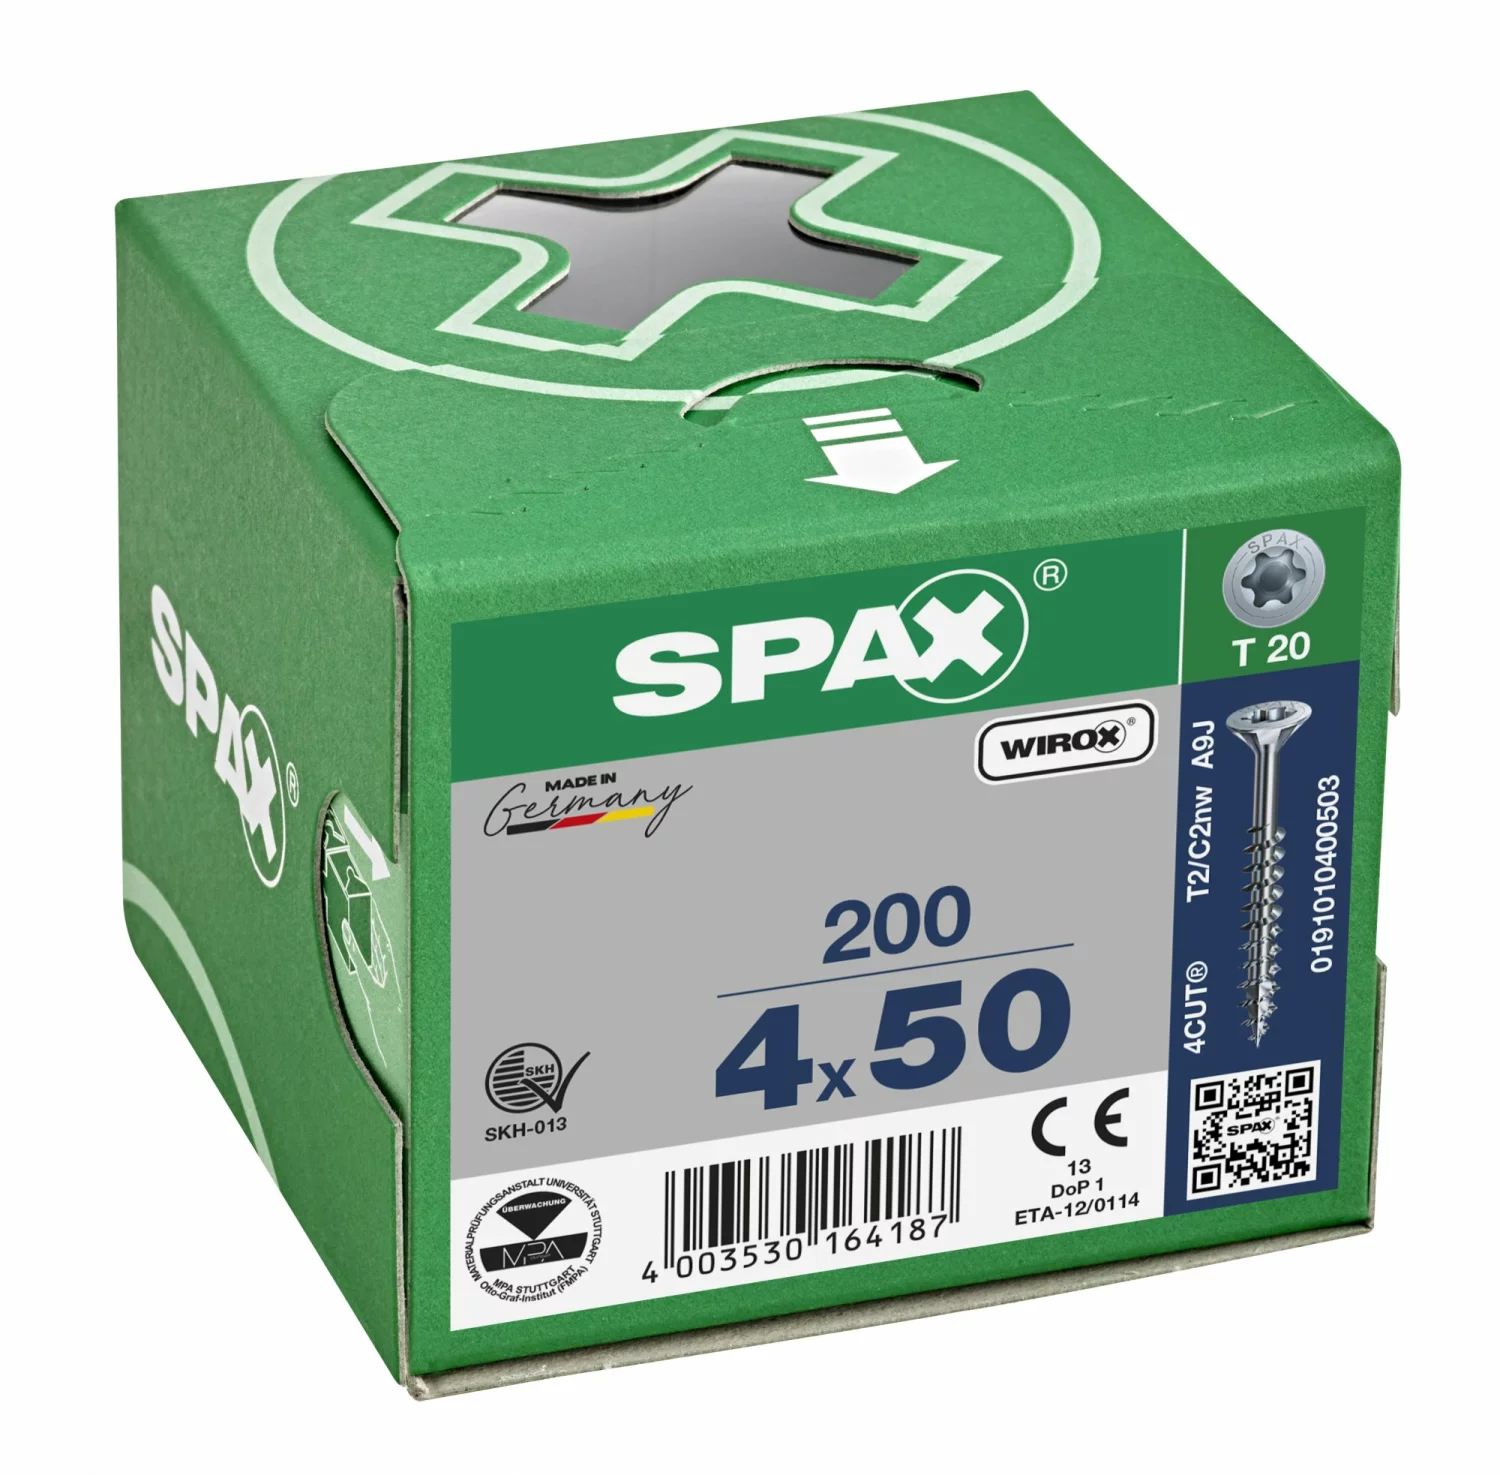 SPAX 191010400503 Universele schroef, Verzonken kop, 4 x 50, Deeldraad, T-STAR plus TX20 - WIROX - 200 stuks-image